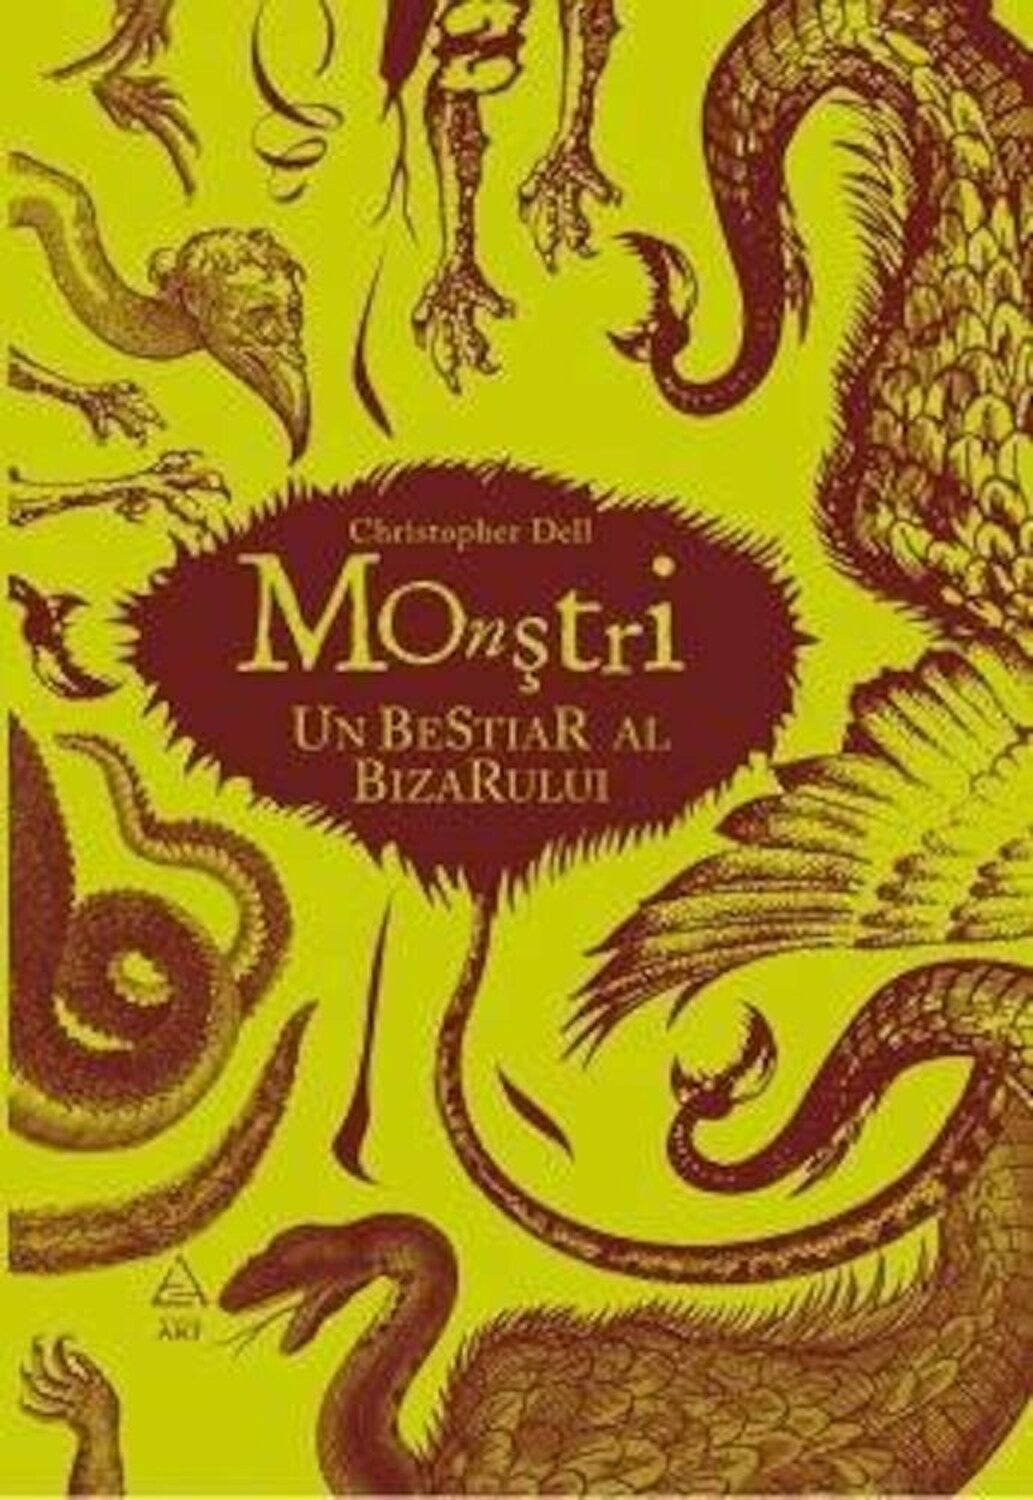 Monstri. Un bestiar al bizarului | Cristopher Dell Art